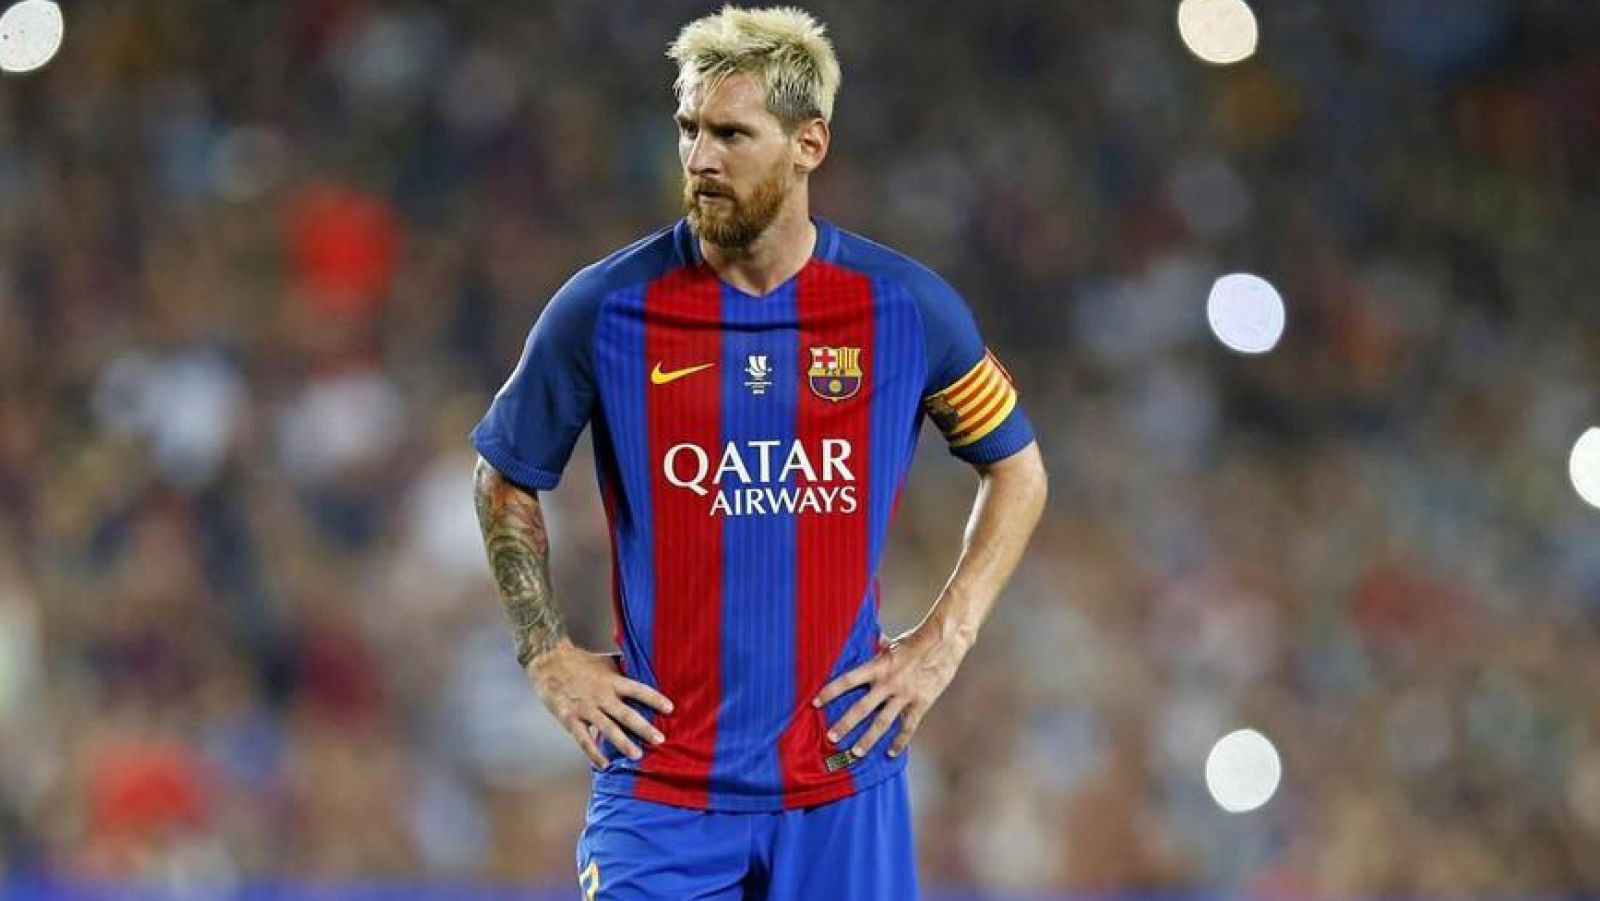 Confirmadas las molestias en el aduptor izquierdo de Leo Messi